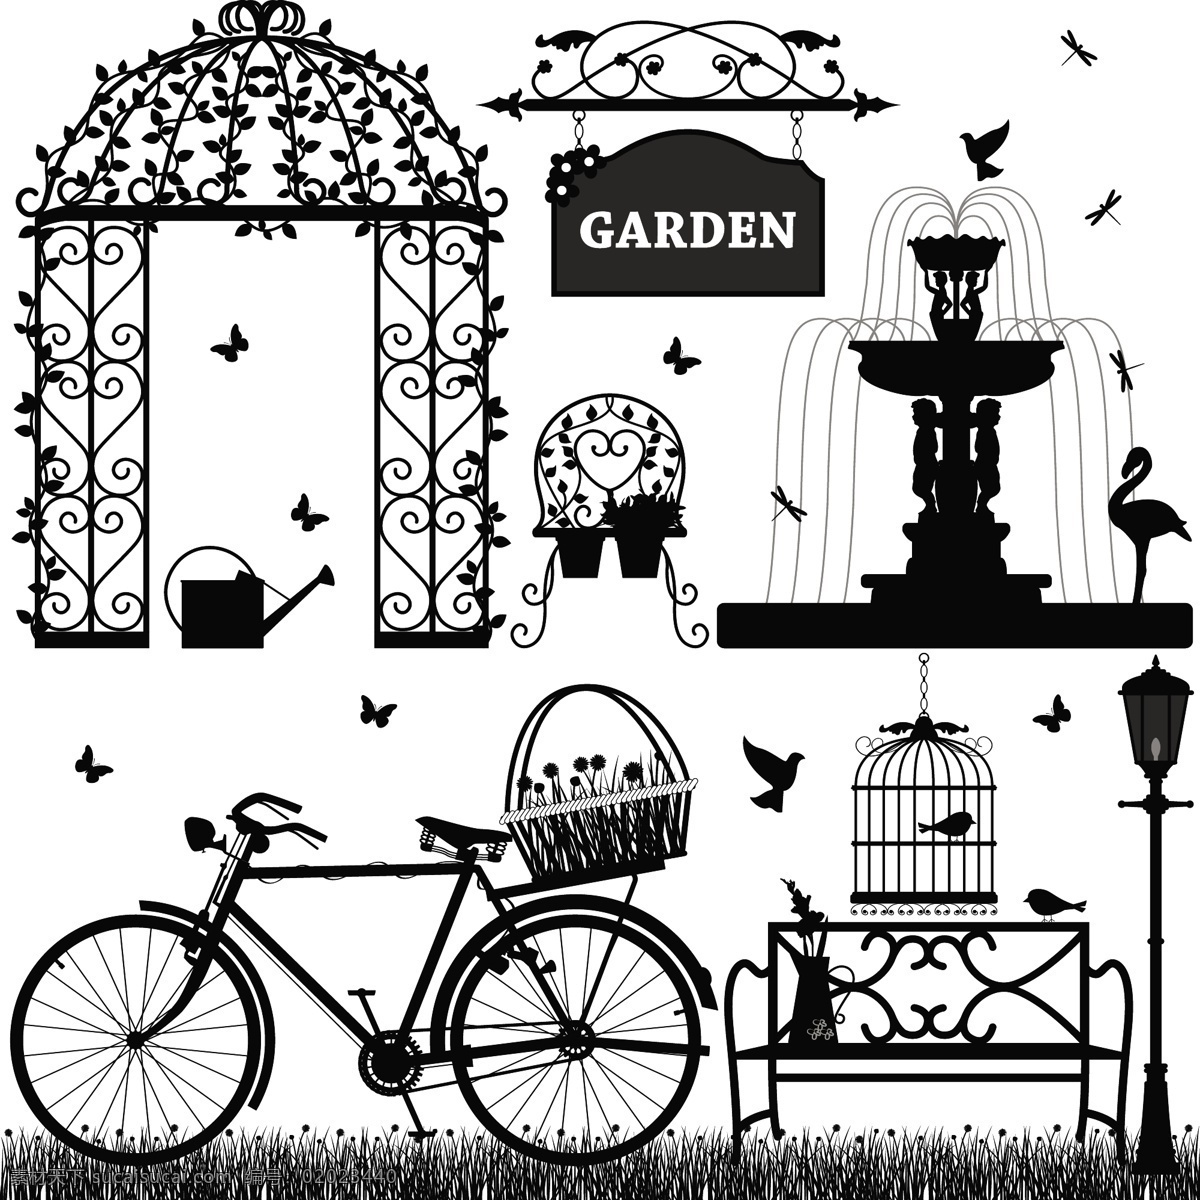 自行车 喷水池 花鸟 花 鸟 鸟笼 篮子 拱门 蝴蝶 蜻蜓 椅子 路灯 草地 指示牌 花园 浇水壶 环境设计 景观设计